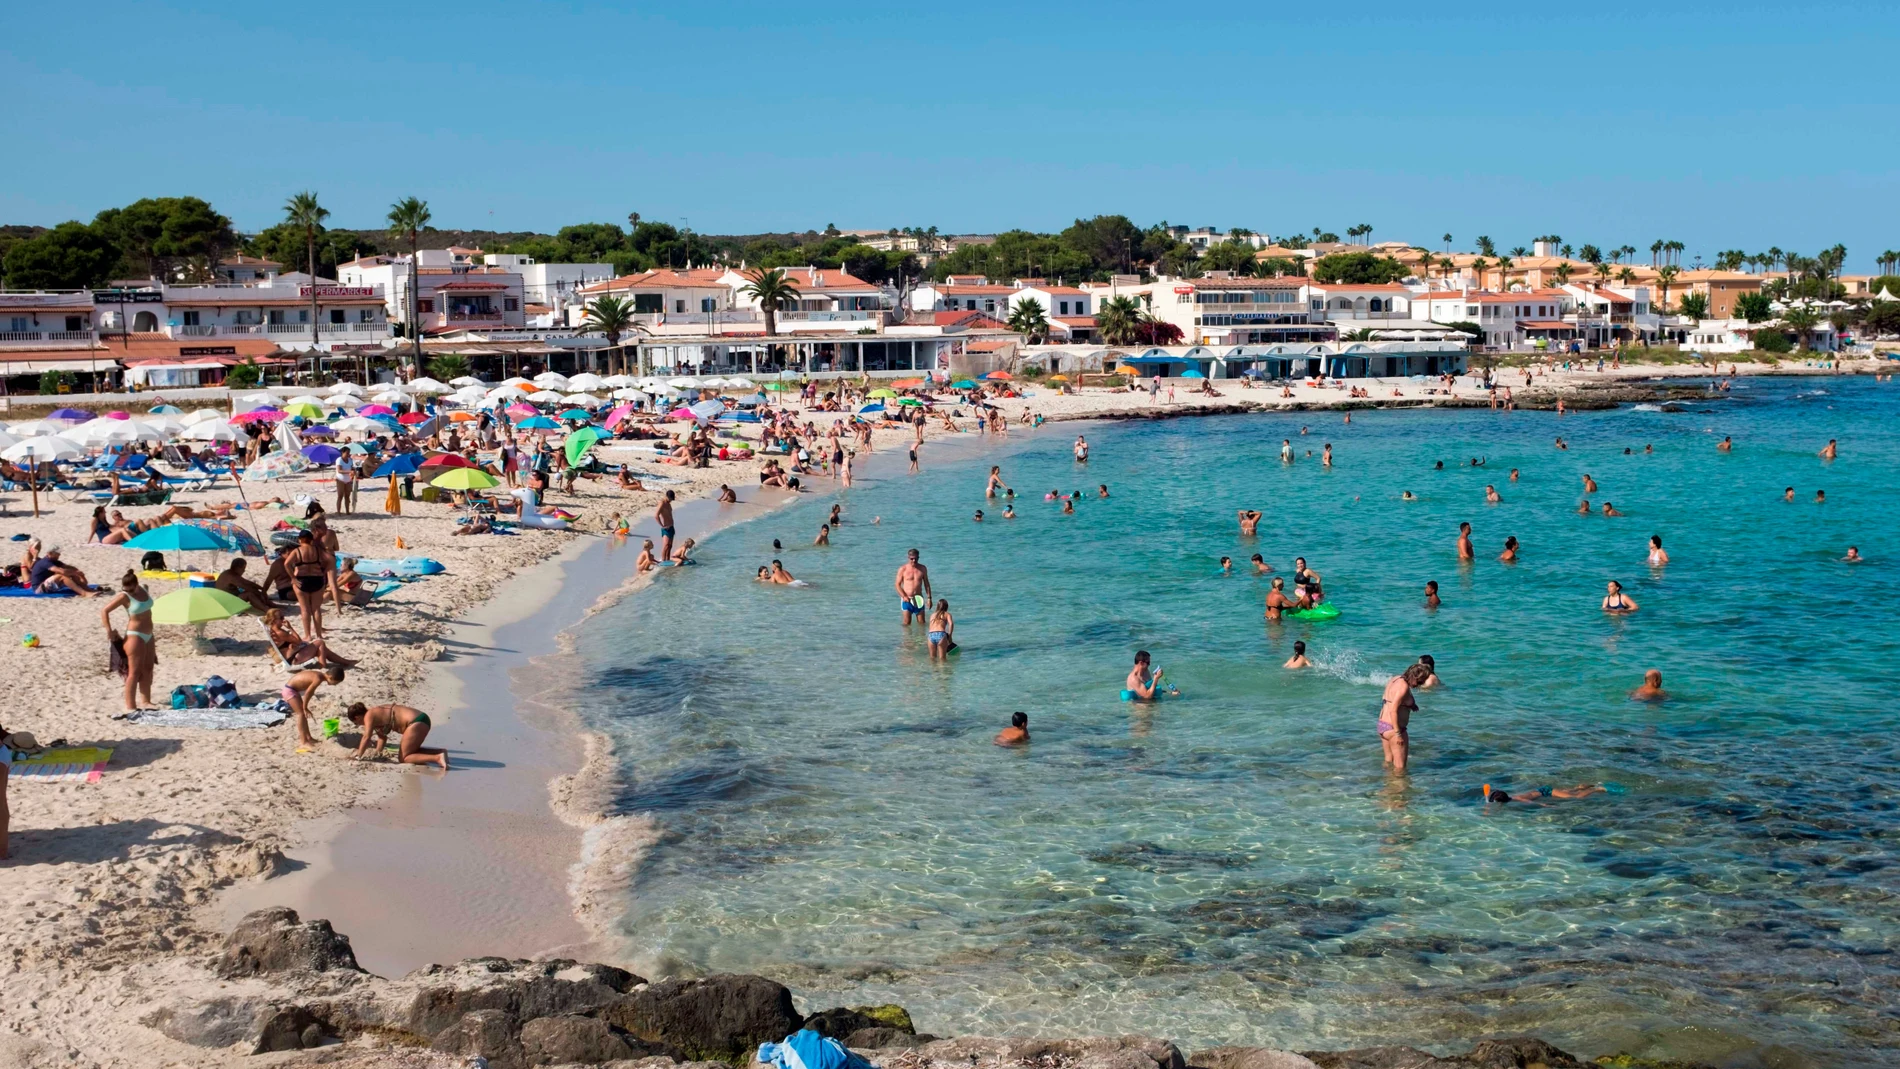 Los alquileres en las Islas Baleares son los más altos de España con un precio medio de 331 euros por noche